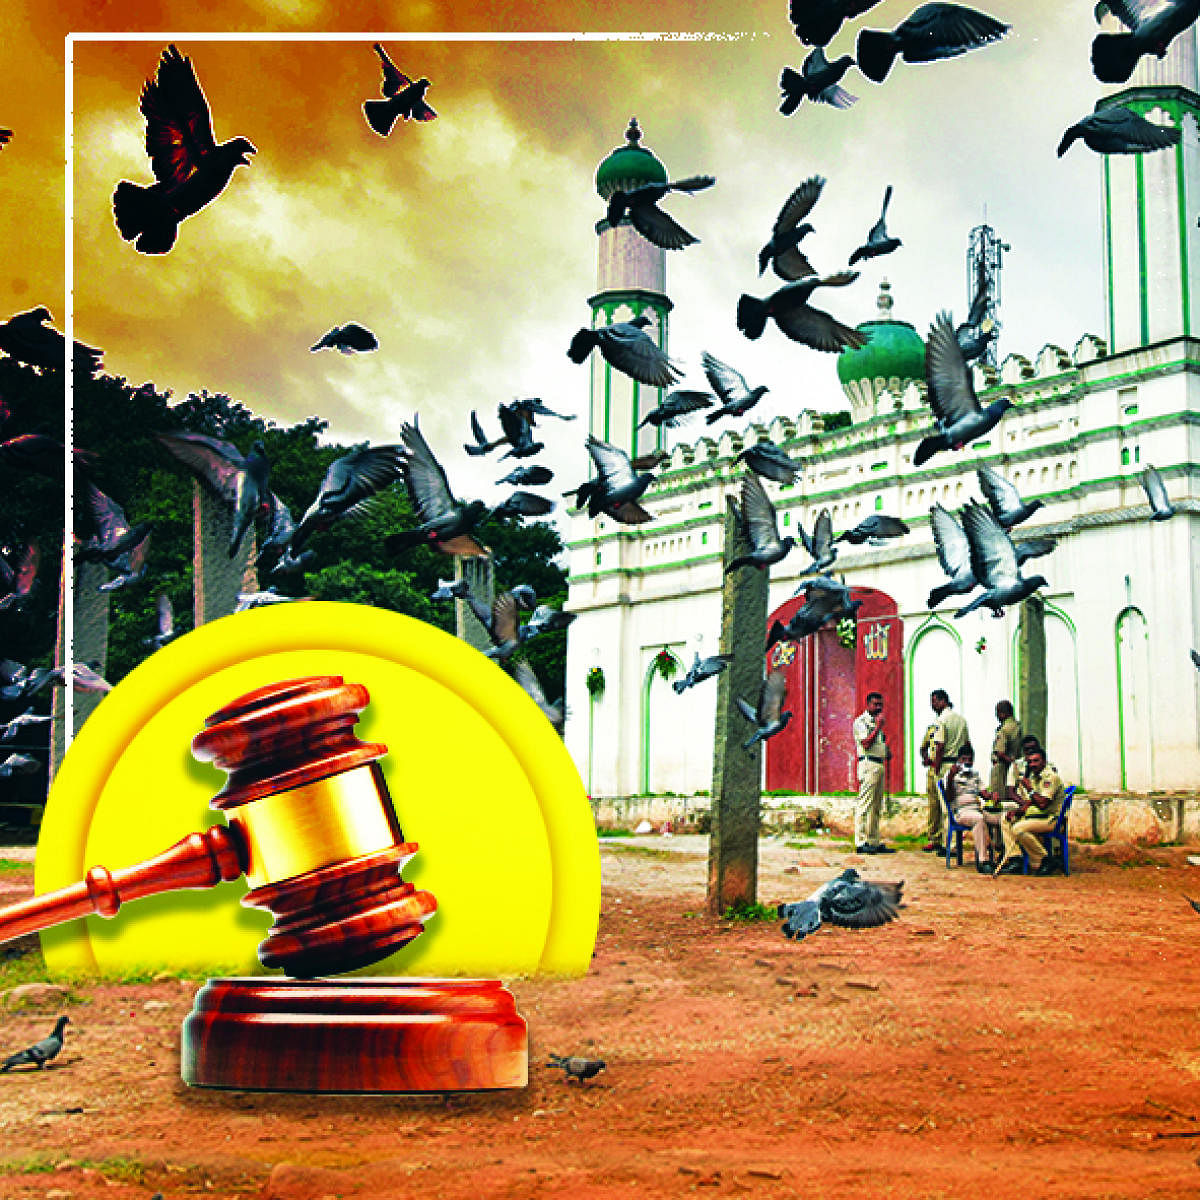 ಸಂಪಾದಕೀಯ | ಈದ್ಗಾ: ಸುಪ್ರೀಂ ಆದೇಶ ಸ್ವಾಗತಾರ್ಹ, ಸೌಹಾರ್ದ ಪರಂಪರೆ ಎತ್ತಿಹಿಡಿಯೋಣ